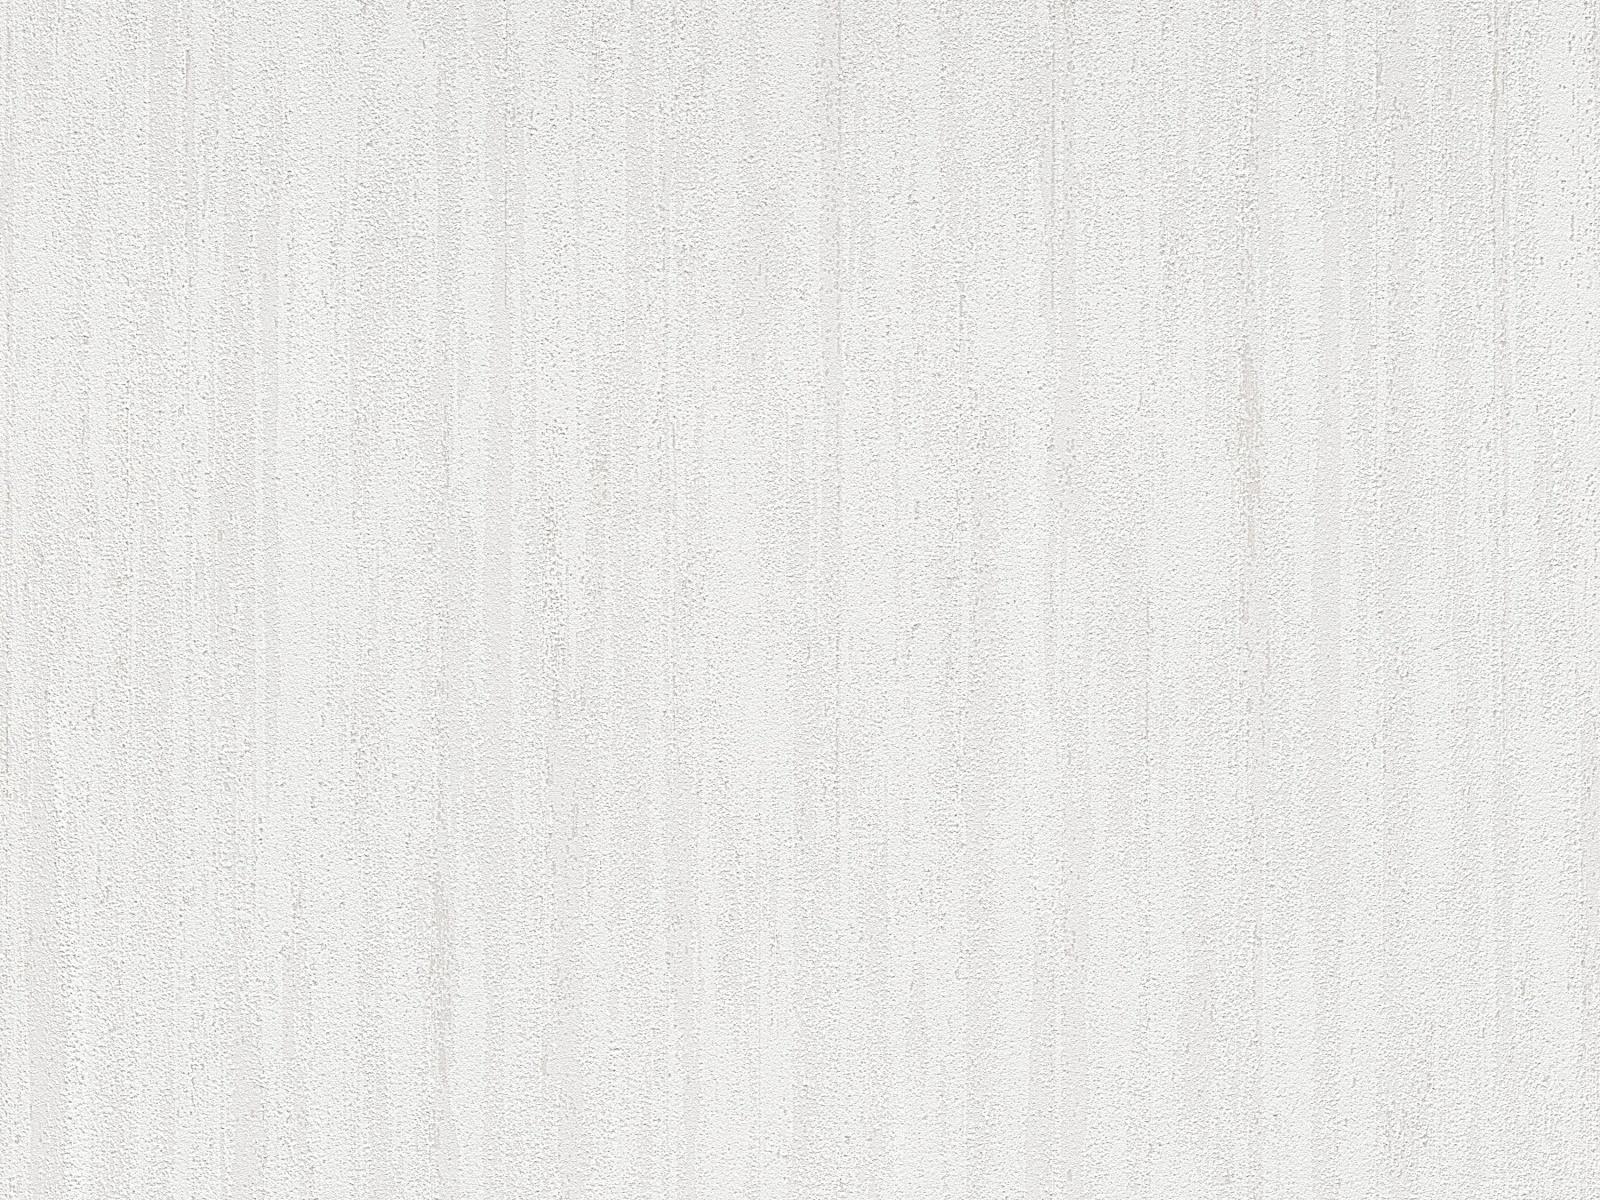 Vliesová biela tapeta s decentným pásikom tón v tóne s matným odleskom, ER-601756